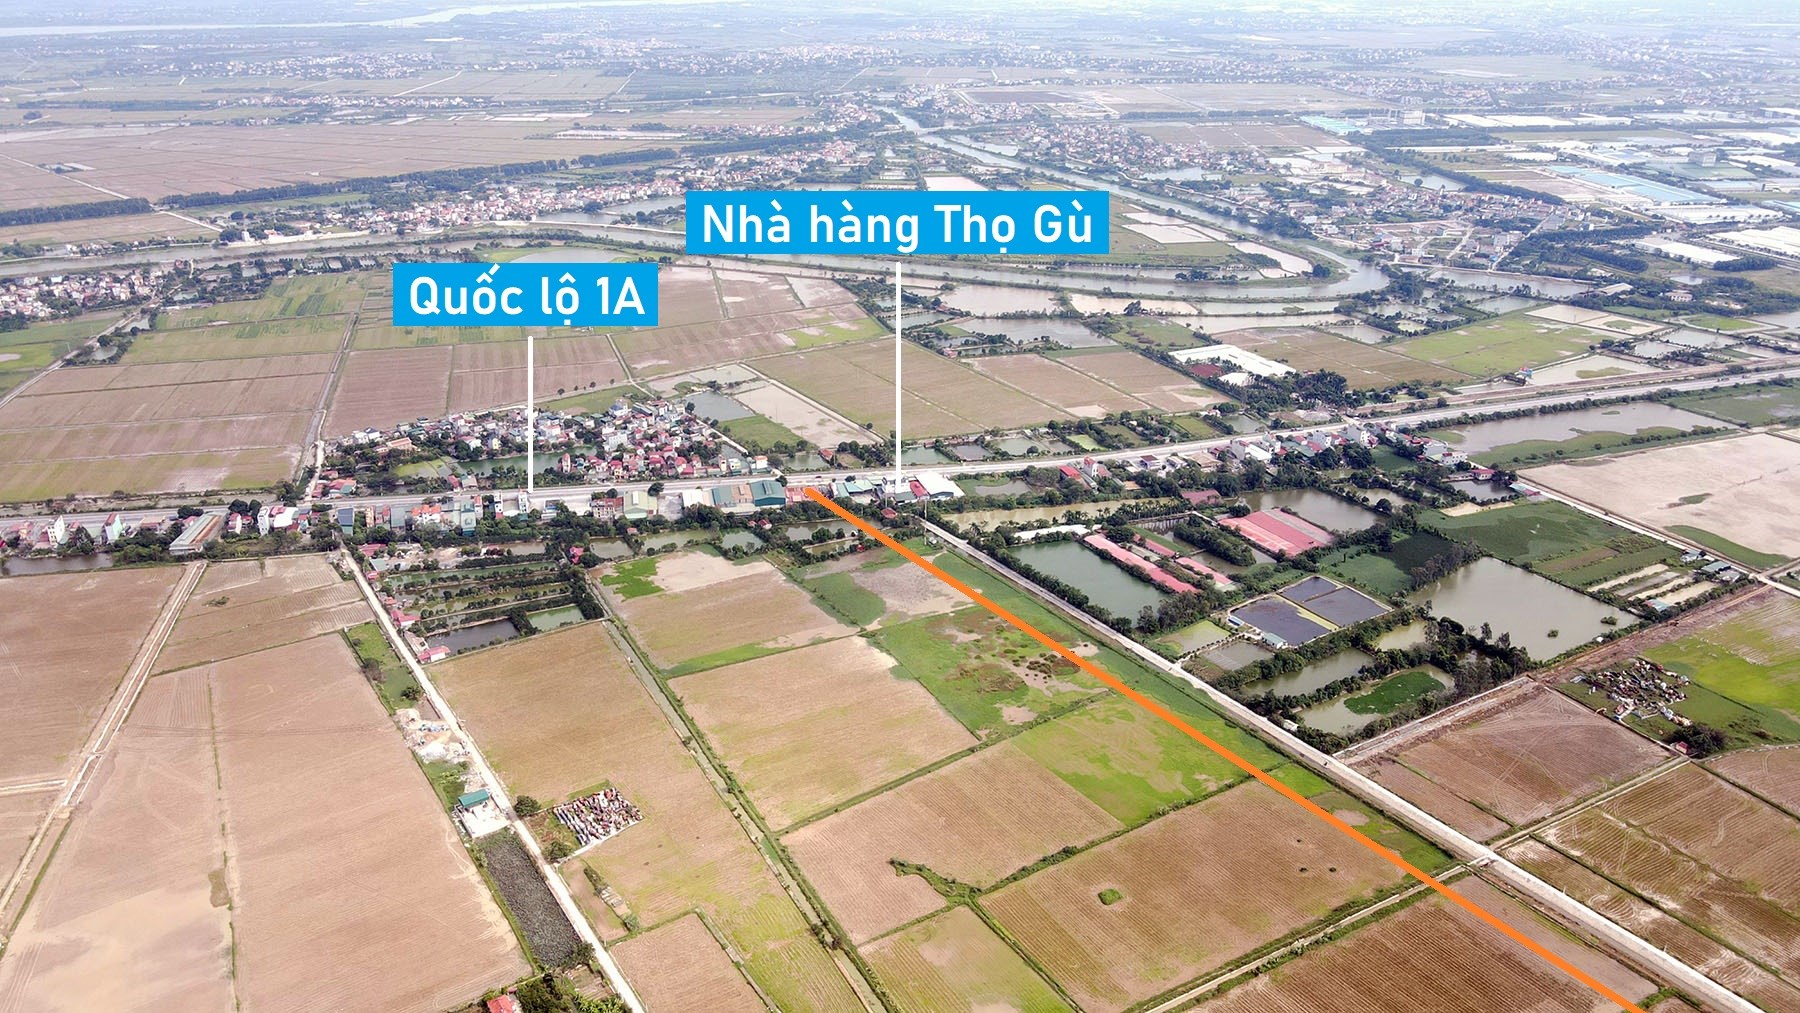 Hình ảnh cầu vượt sông Nhuệ nối Phú Xuyên - Ứng Hòa, Hà Nội đang xây dựng